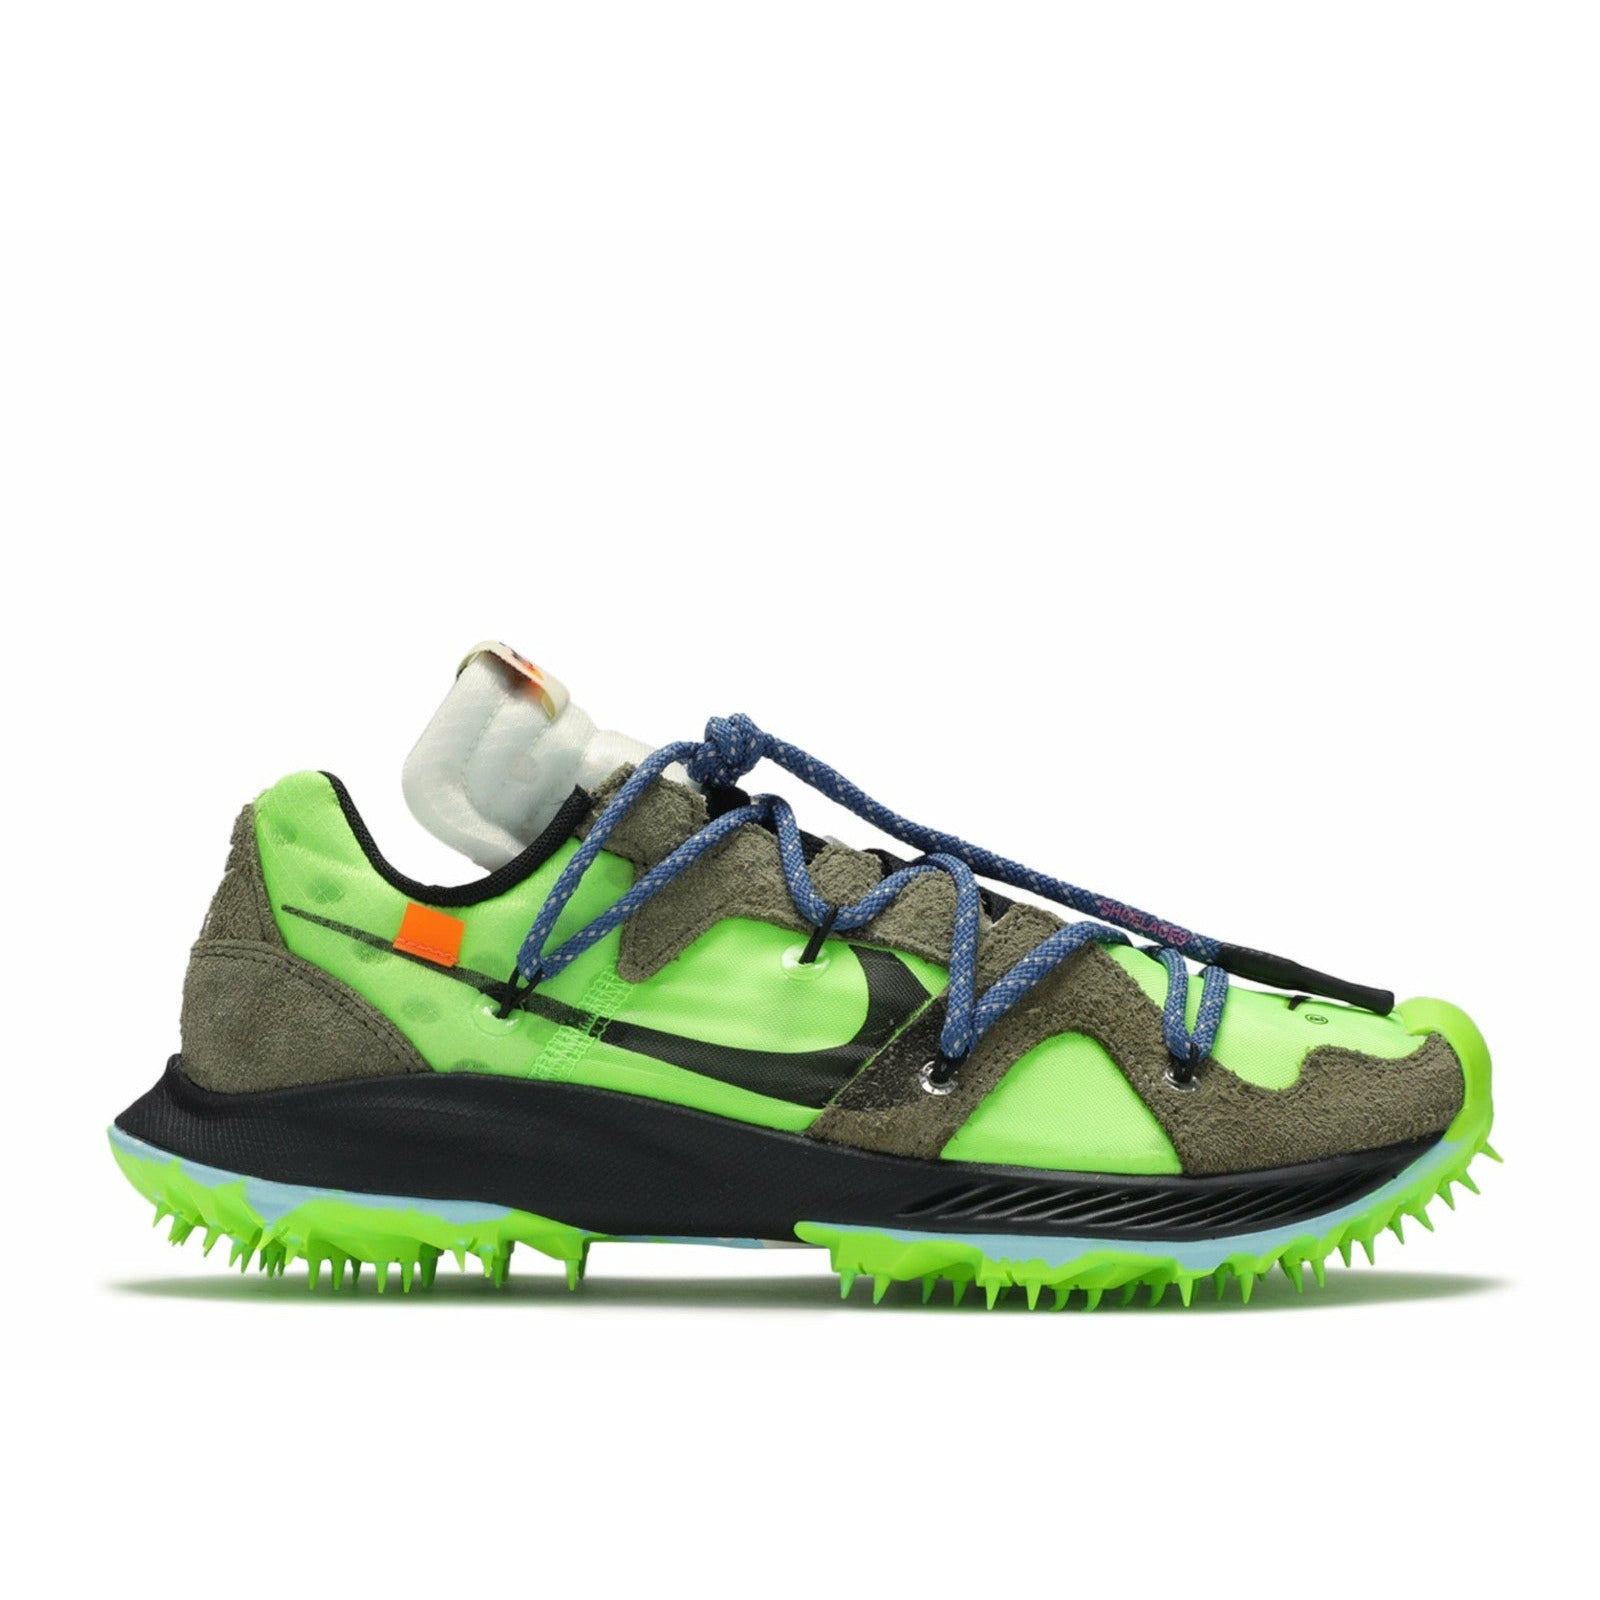 Nike Zoom Terra Kiger 5 Off White Eletric Green